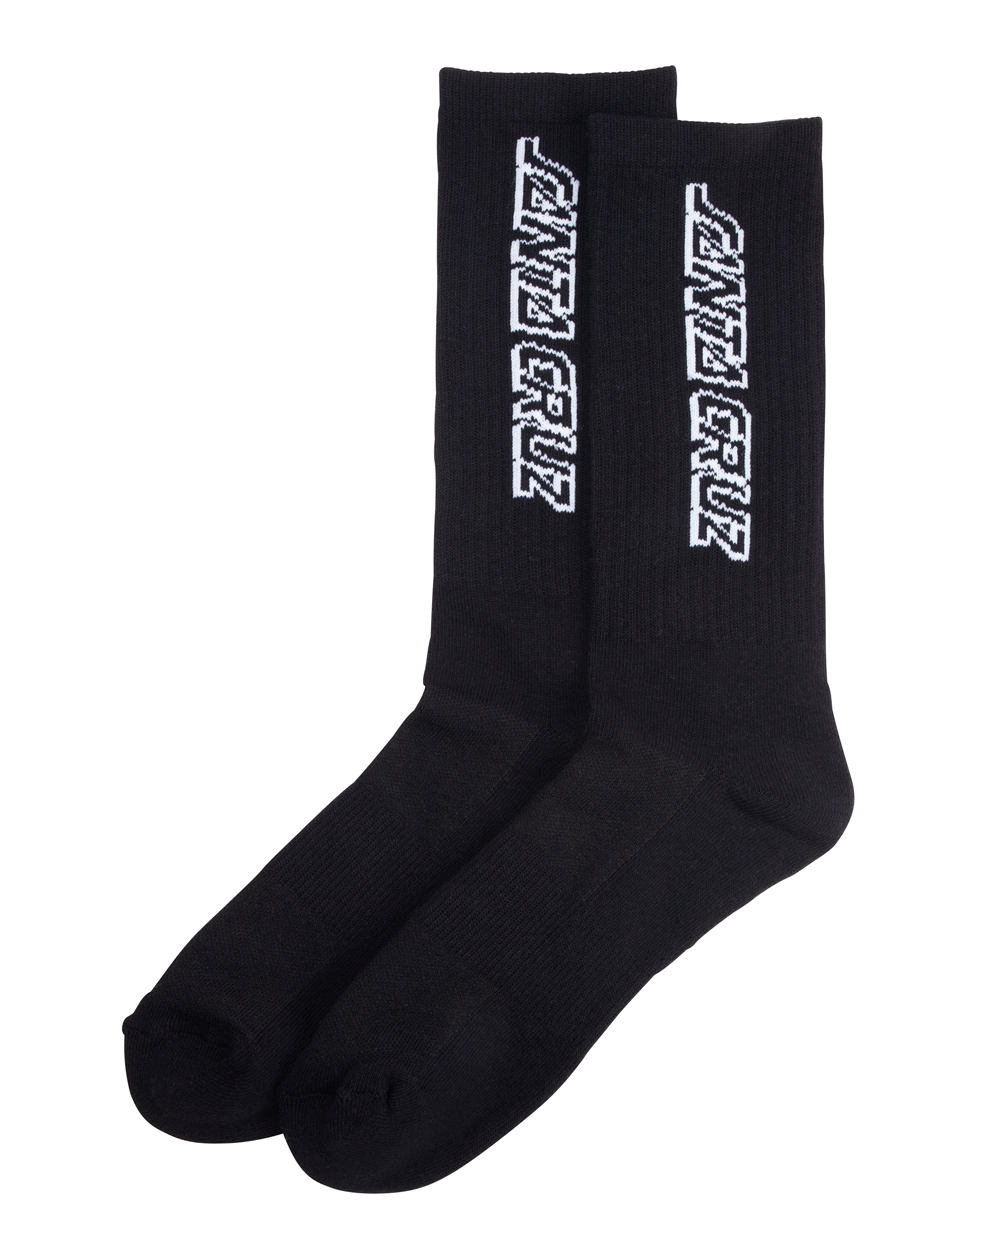 Santa Cruz Men's Socks Classic Strip Black